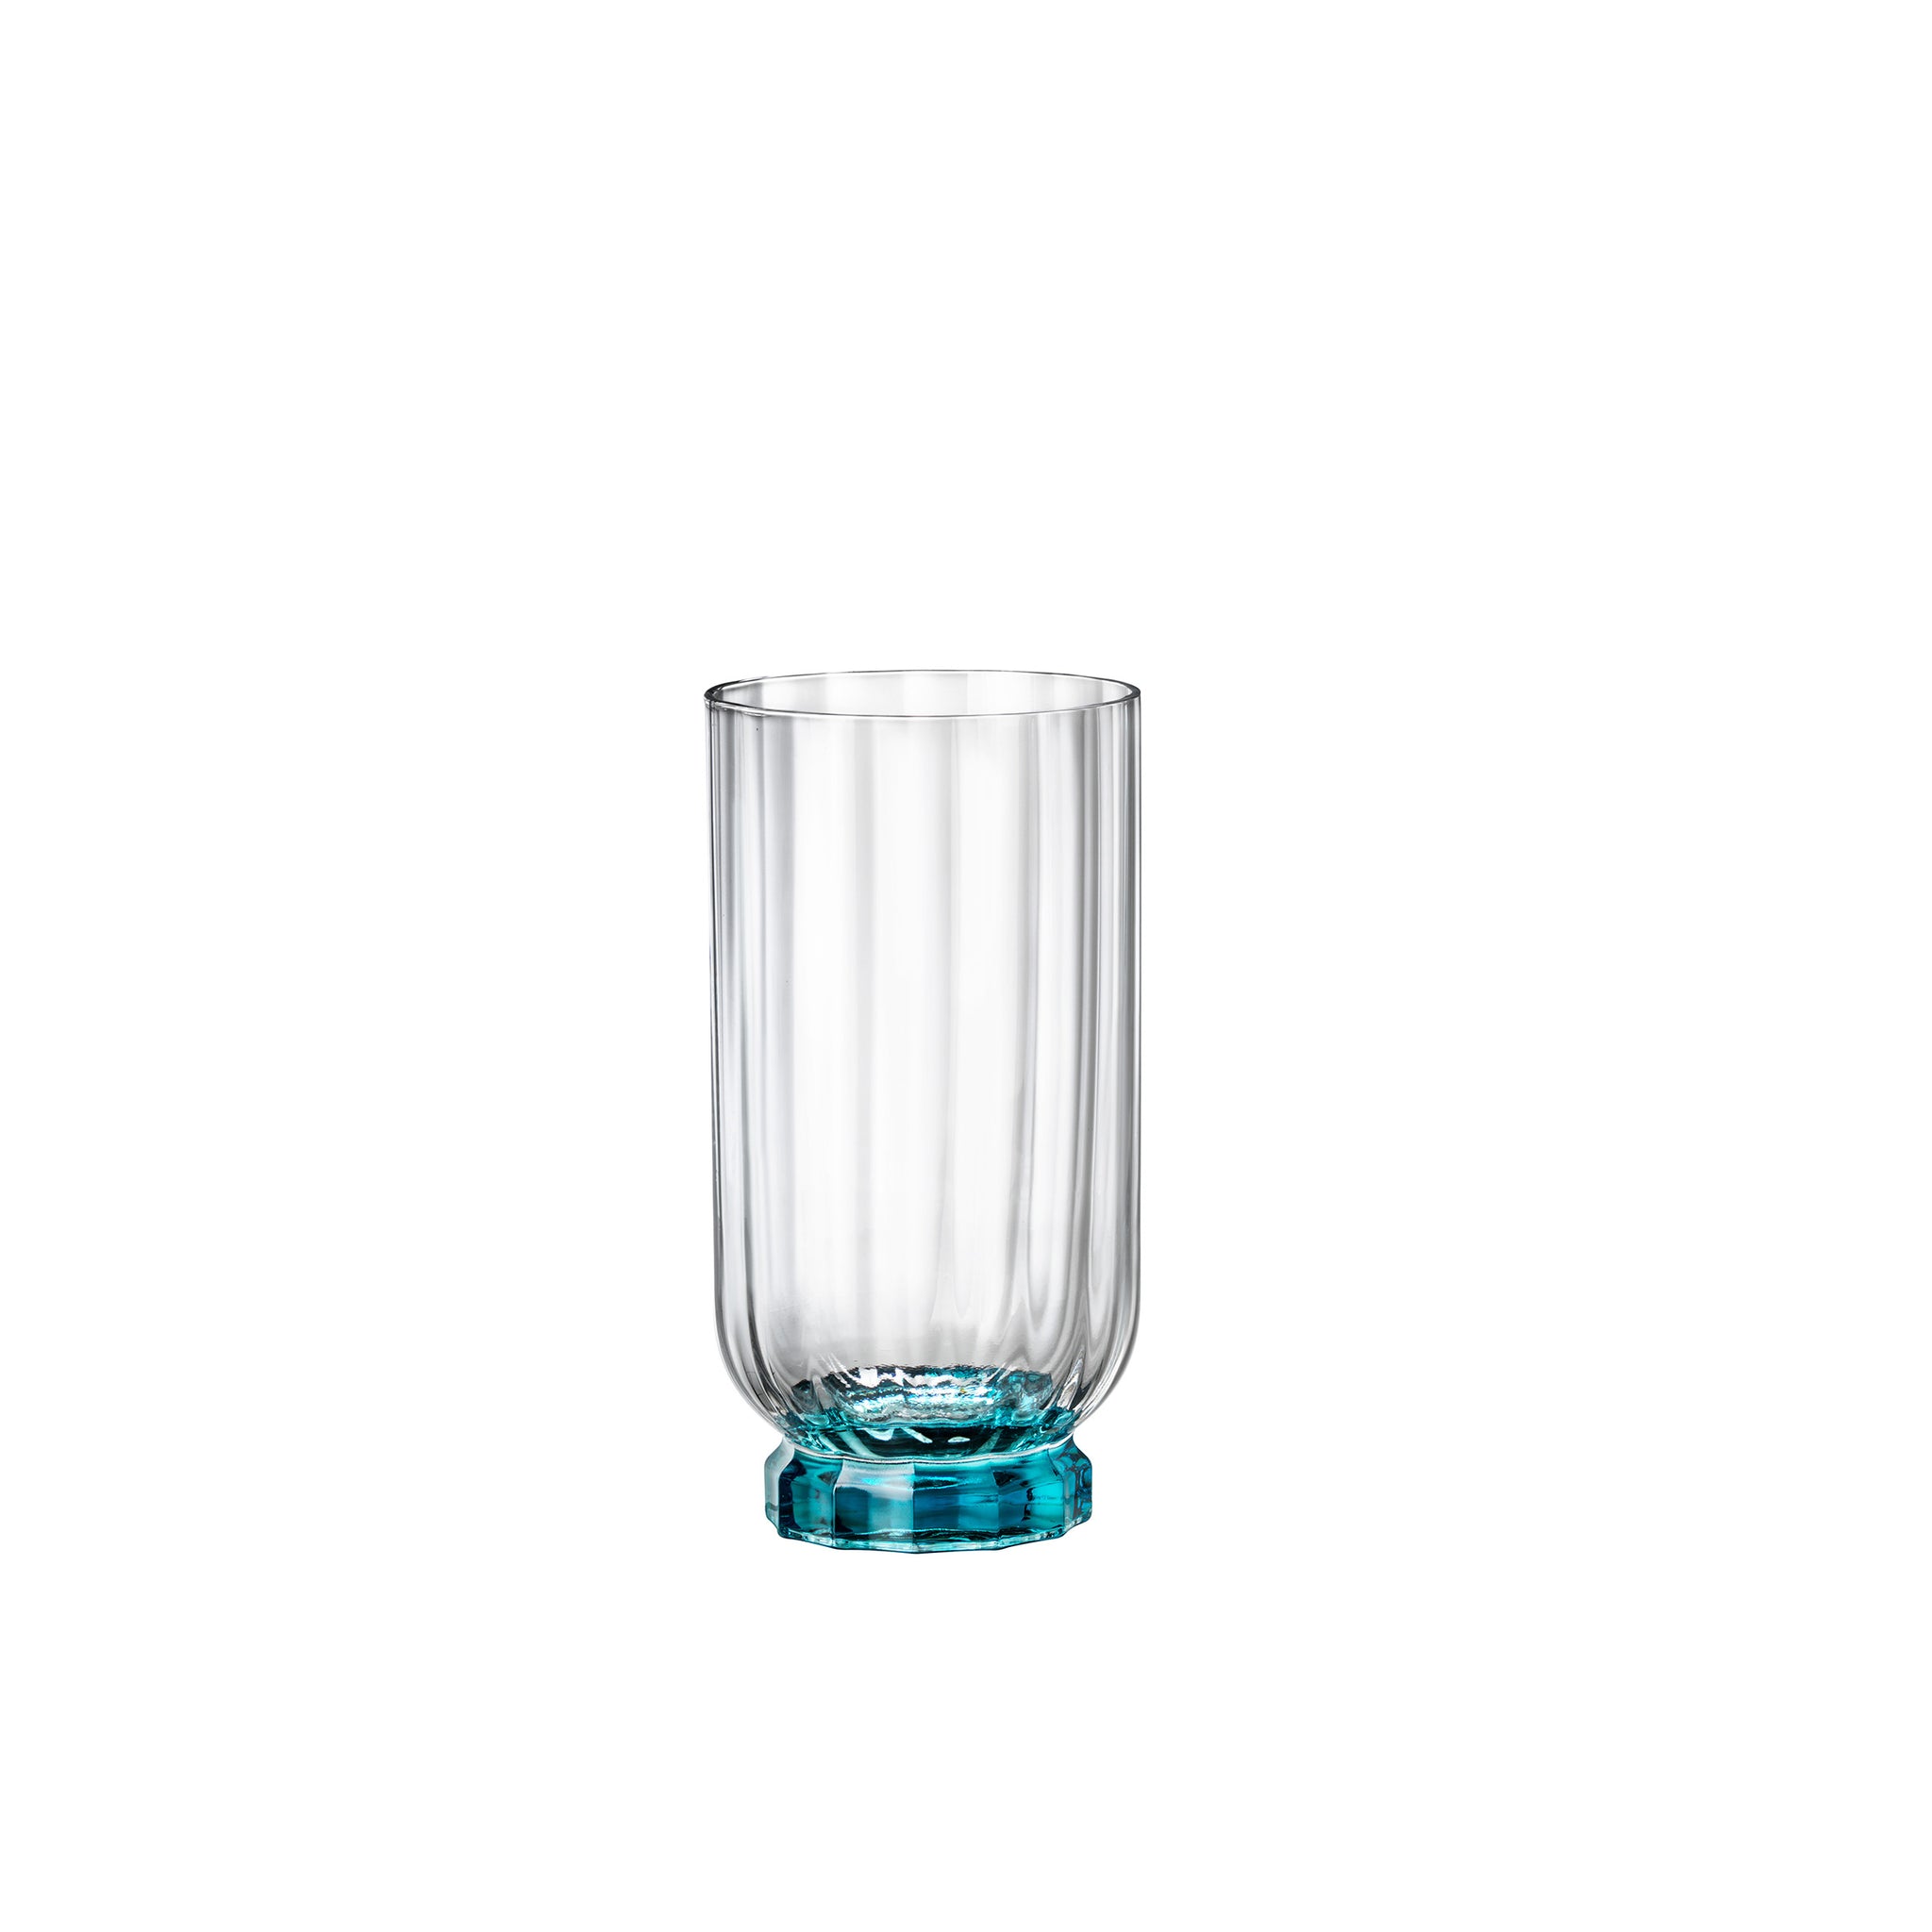 Florian 14.5 oz. Beverage Drinking Glasses, Lucent Blue (Set of 4)